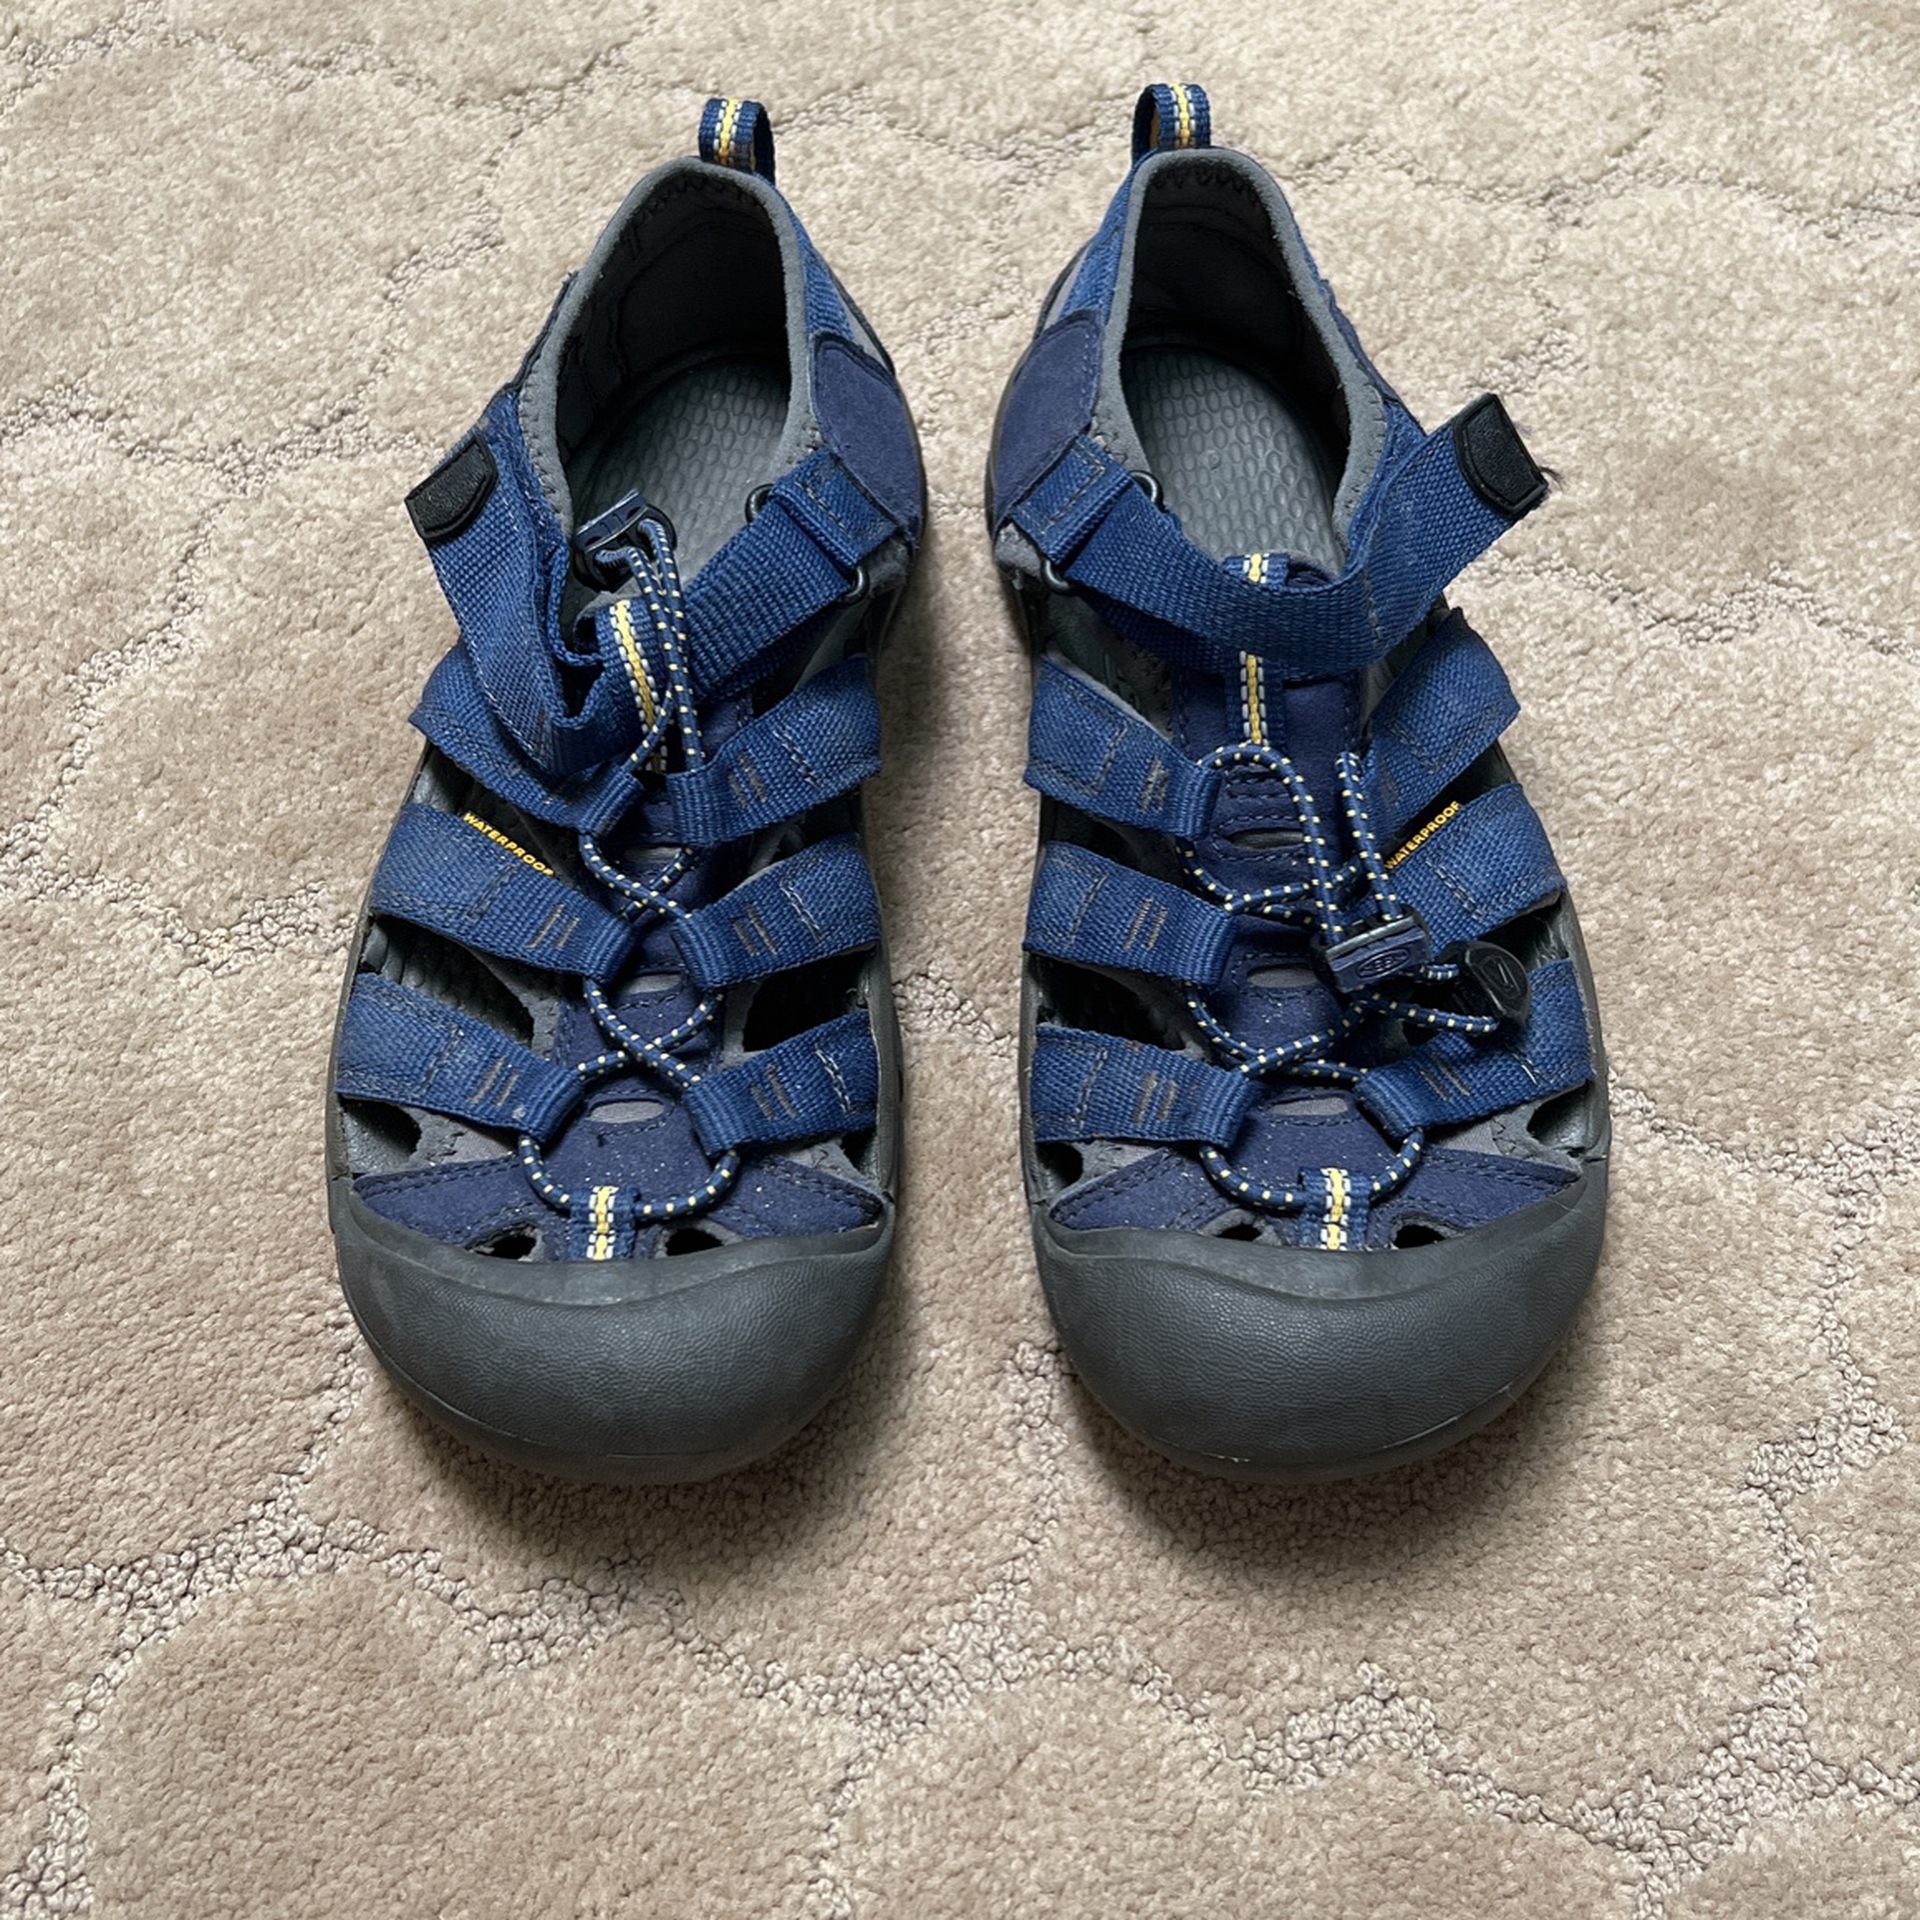 Keen Waterproof Hiking Shoes Sandals